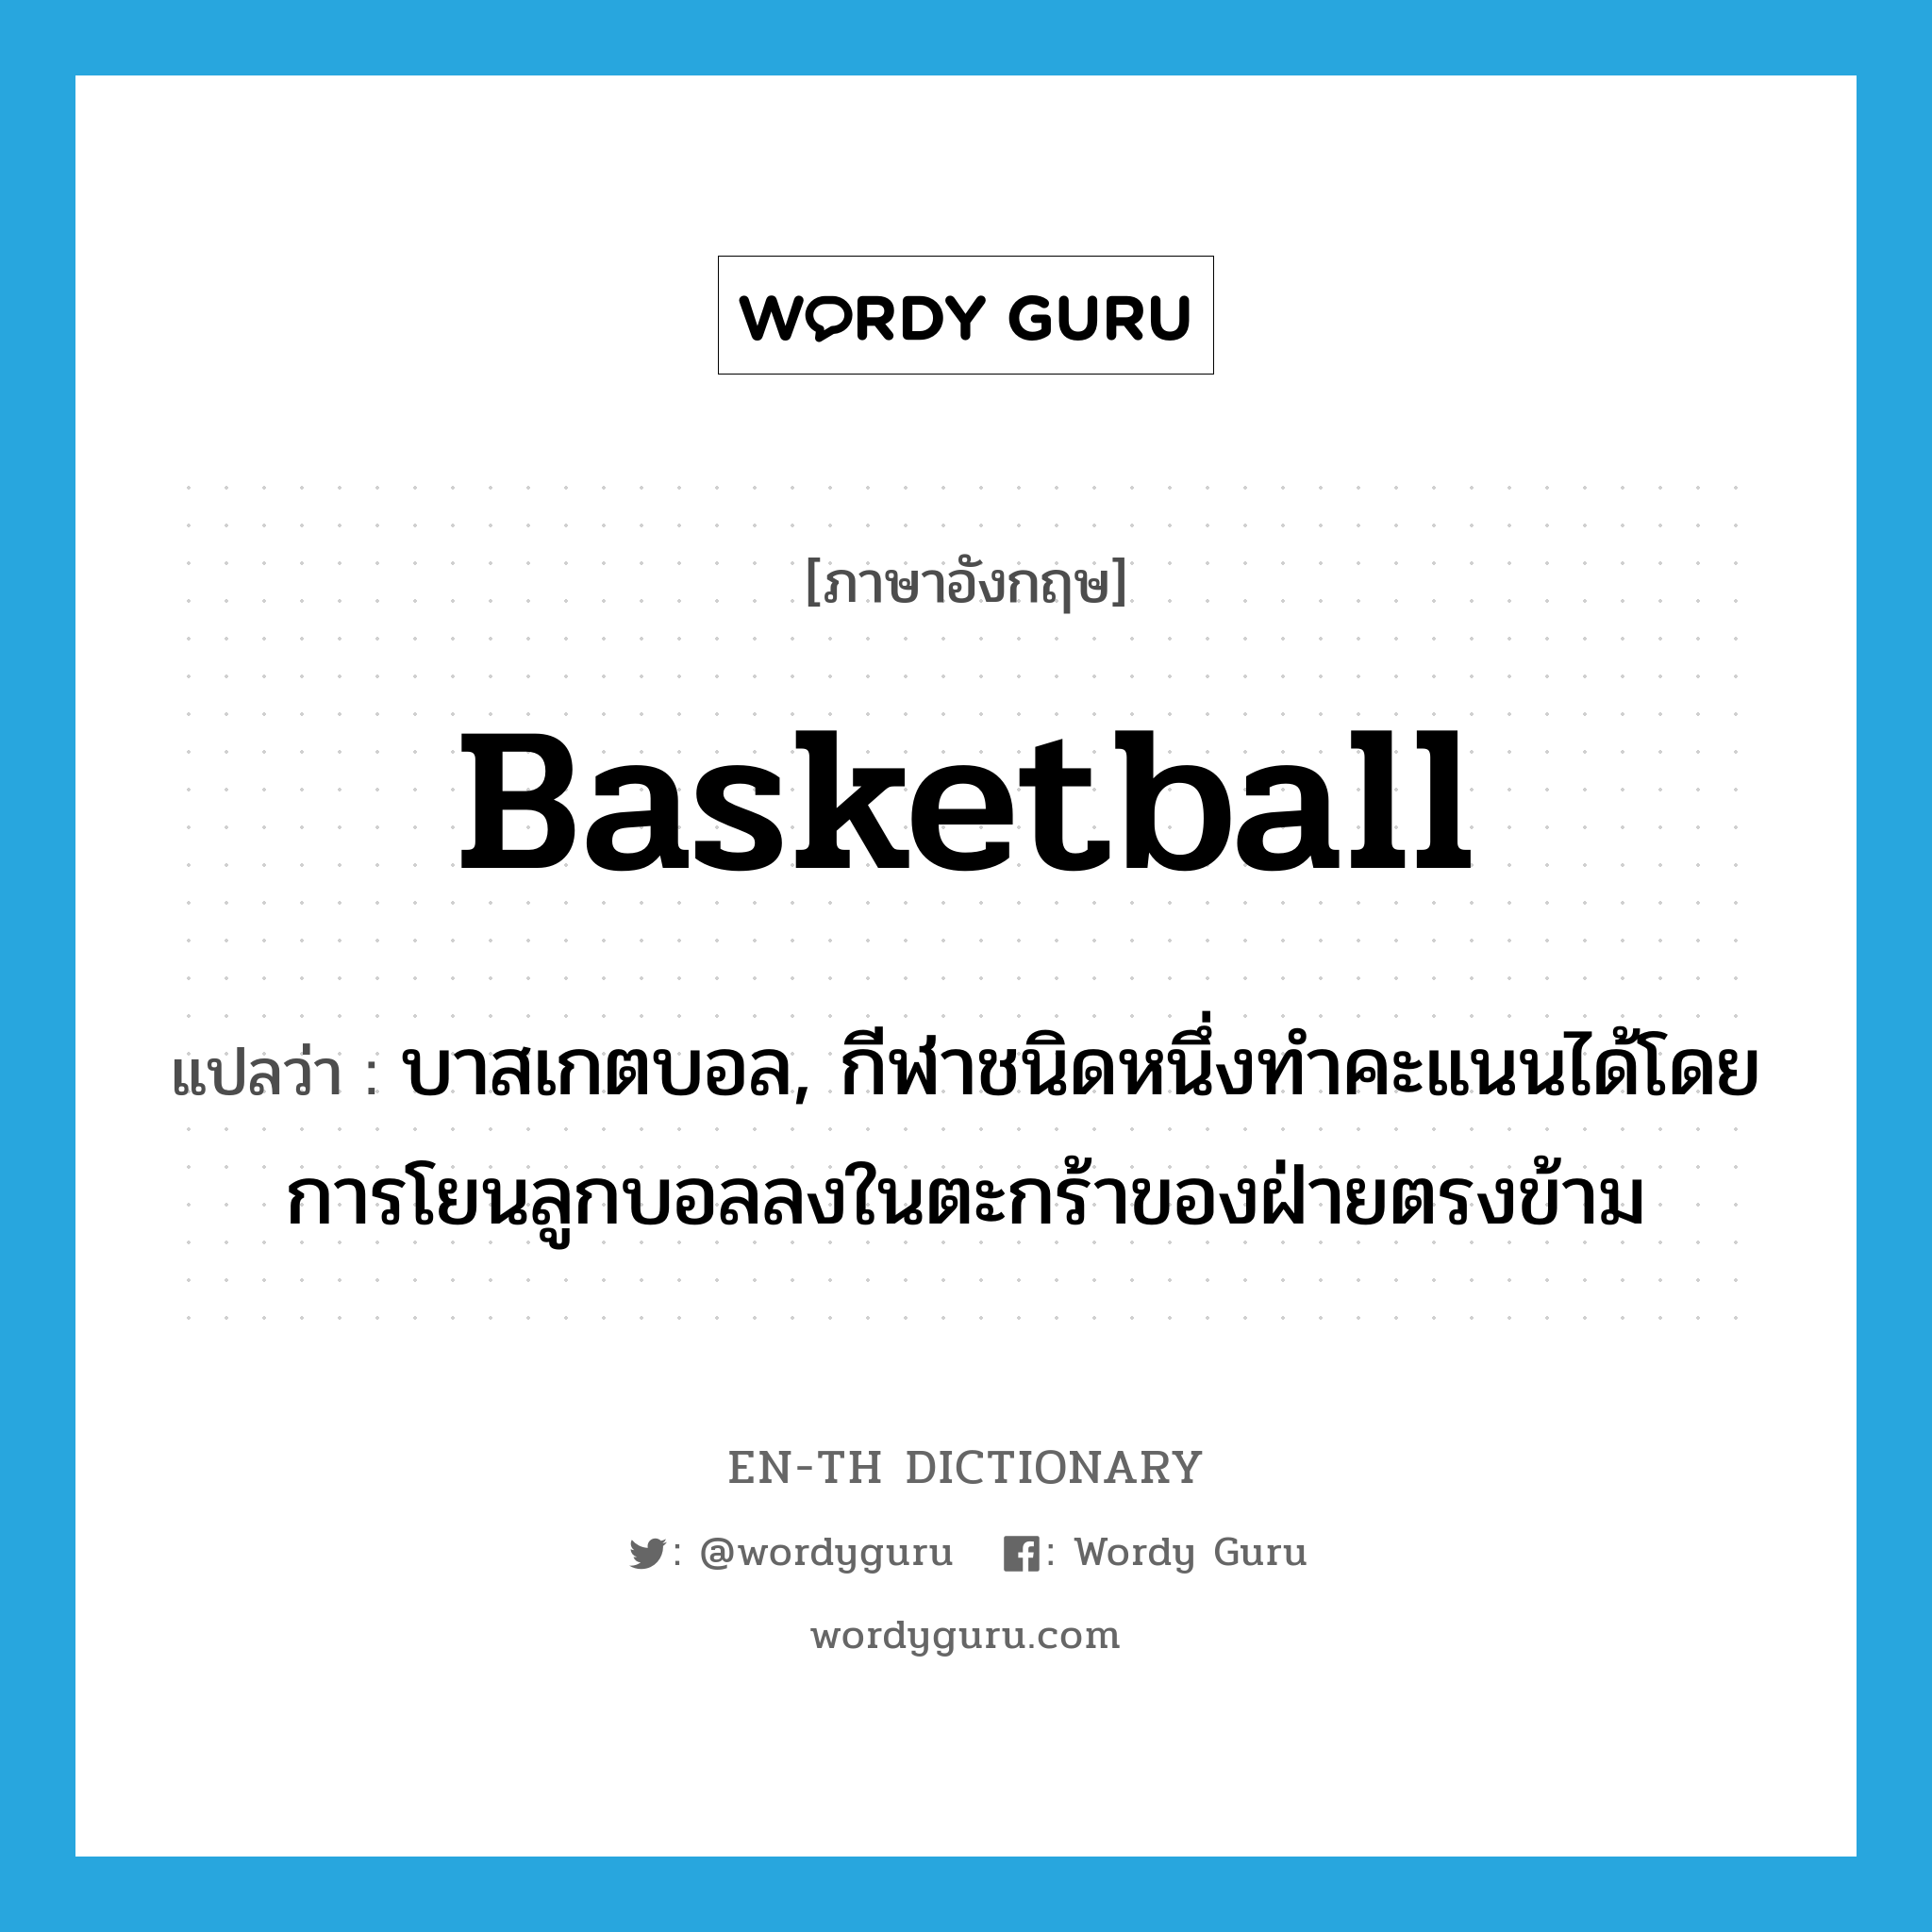 basketball แปลว่า?, คำศัพท์ภาษาอังกฤษ basketball แปลว่า บาสเกตบอล, กีฬาชนิดหนึ่งทำคะแนนได้โดยการโยนลูกบอลลงในตะกร้าของฝ่ายตรงข้าม ประเภท N หมวด N